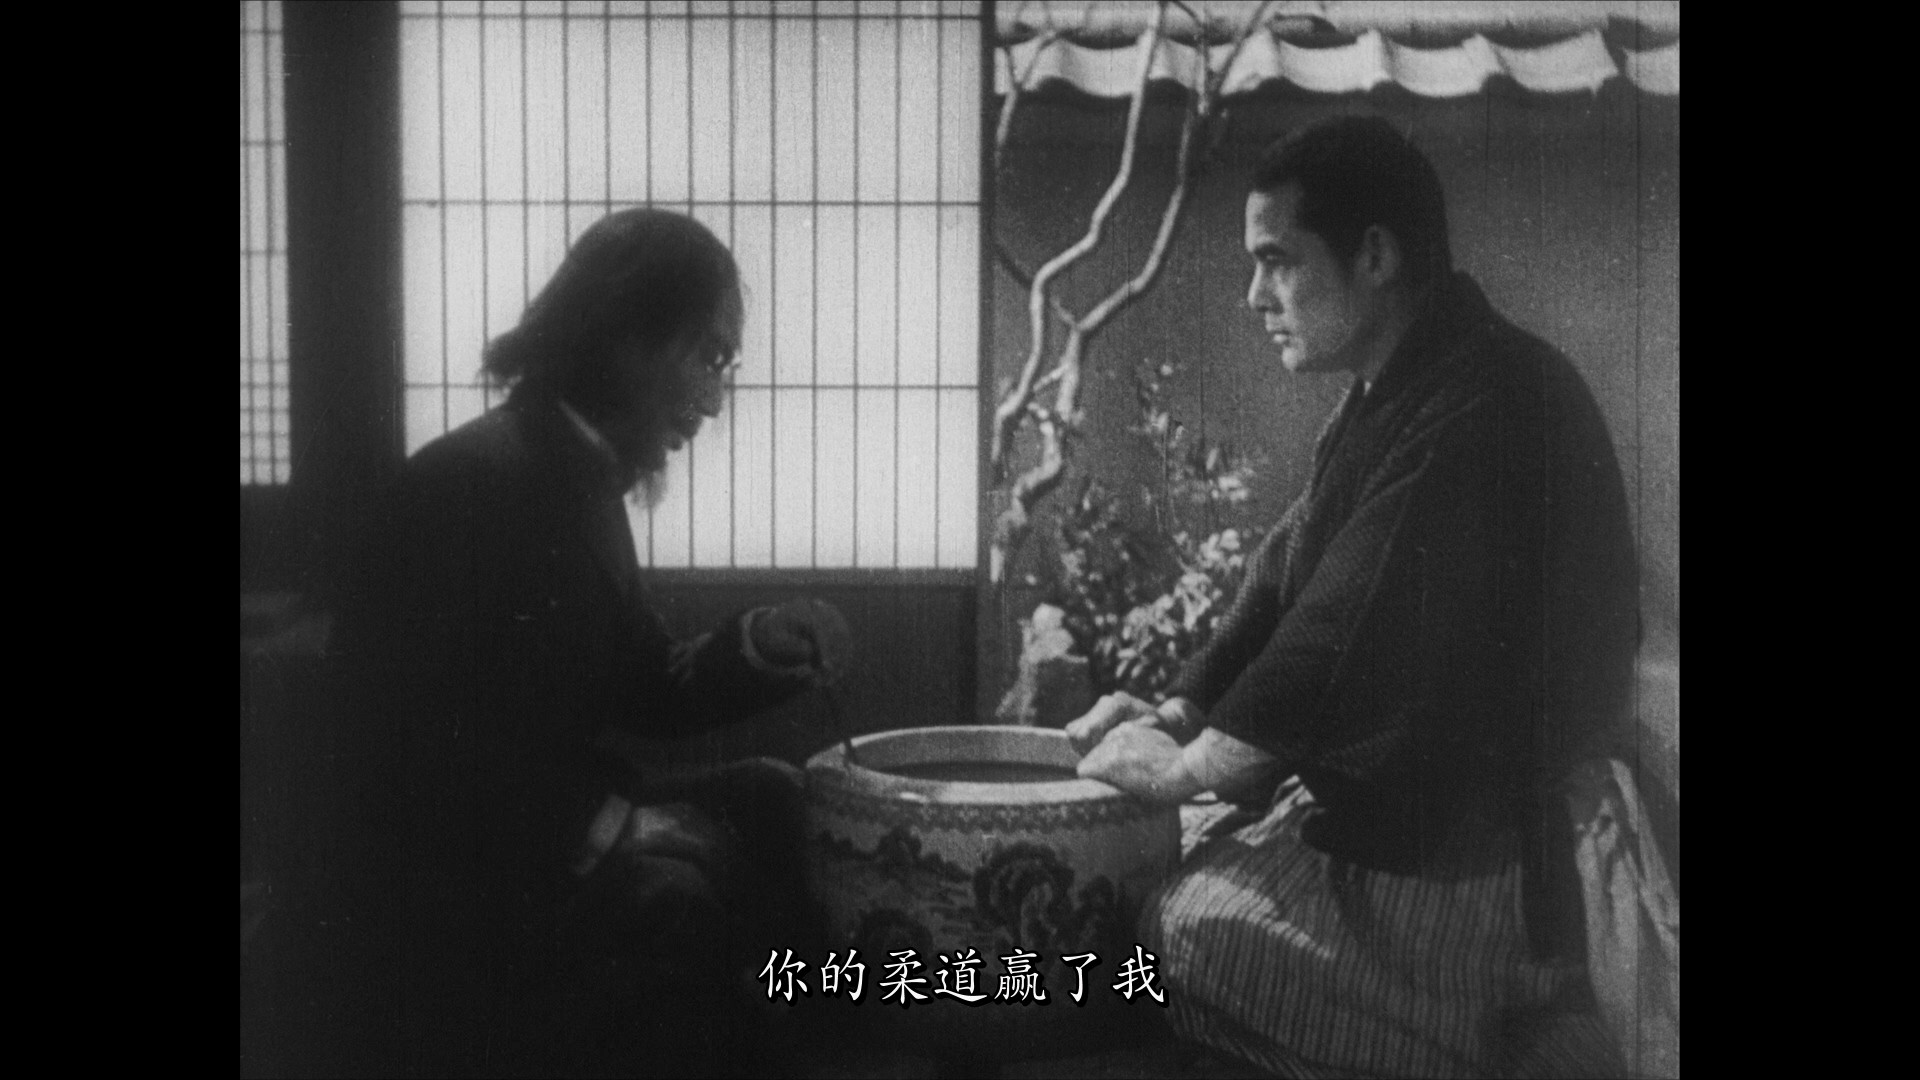 姿三四郎续集 [日东宝版蓝光原盘][DIY正片.简繁字幕]  Sugata Sanshiro Part Two 1945 JPN Blu-ray 1080P AVC LPCM 2.0-blucook#411@CHDBits  [24.57 GB ]-4.jpg